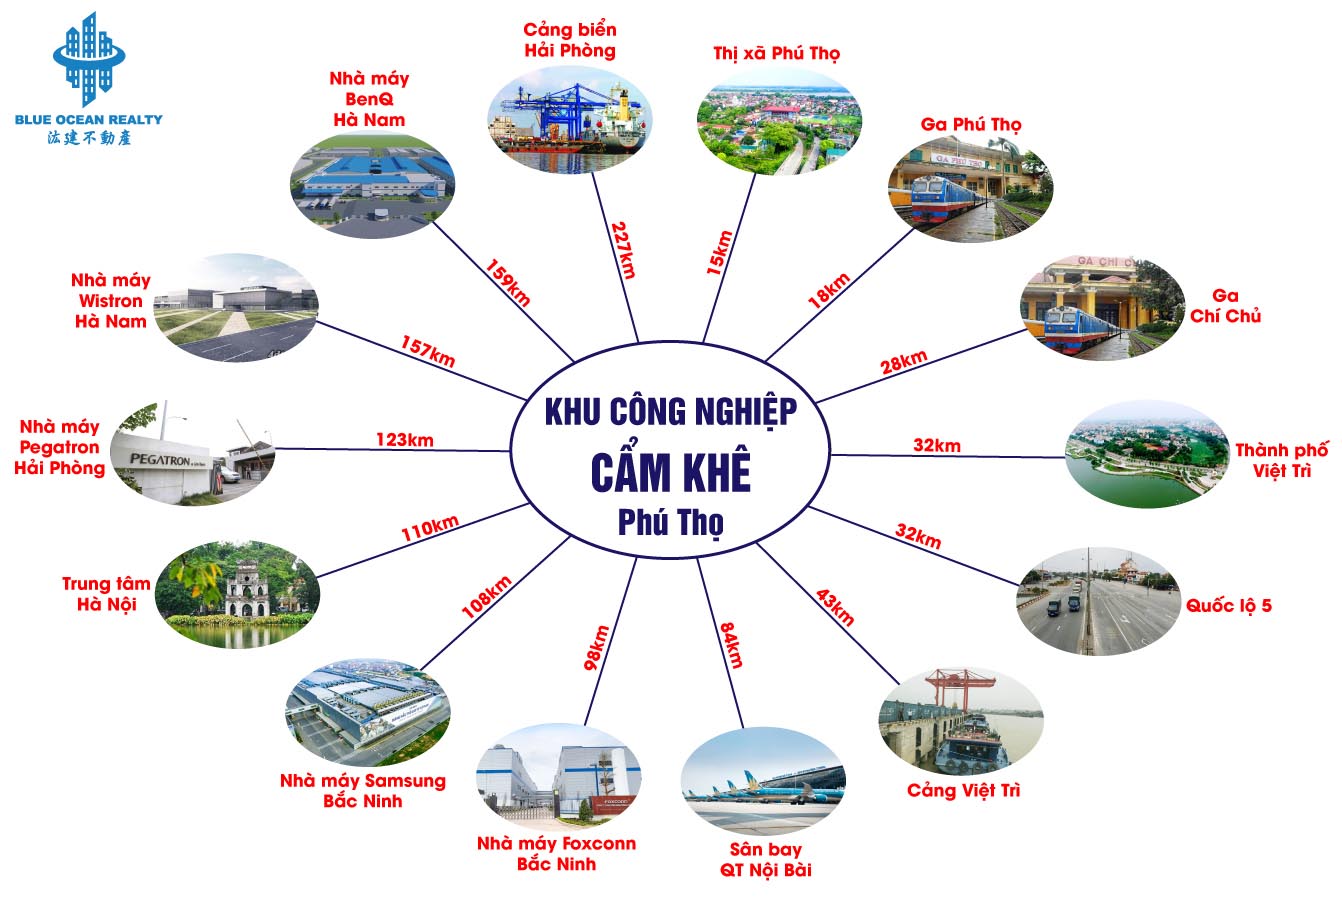 Khu công nghiệp (KCN) Cẩm Khê tỉnh Phú Thọ